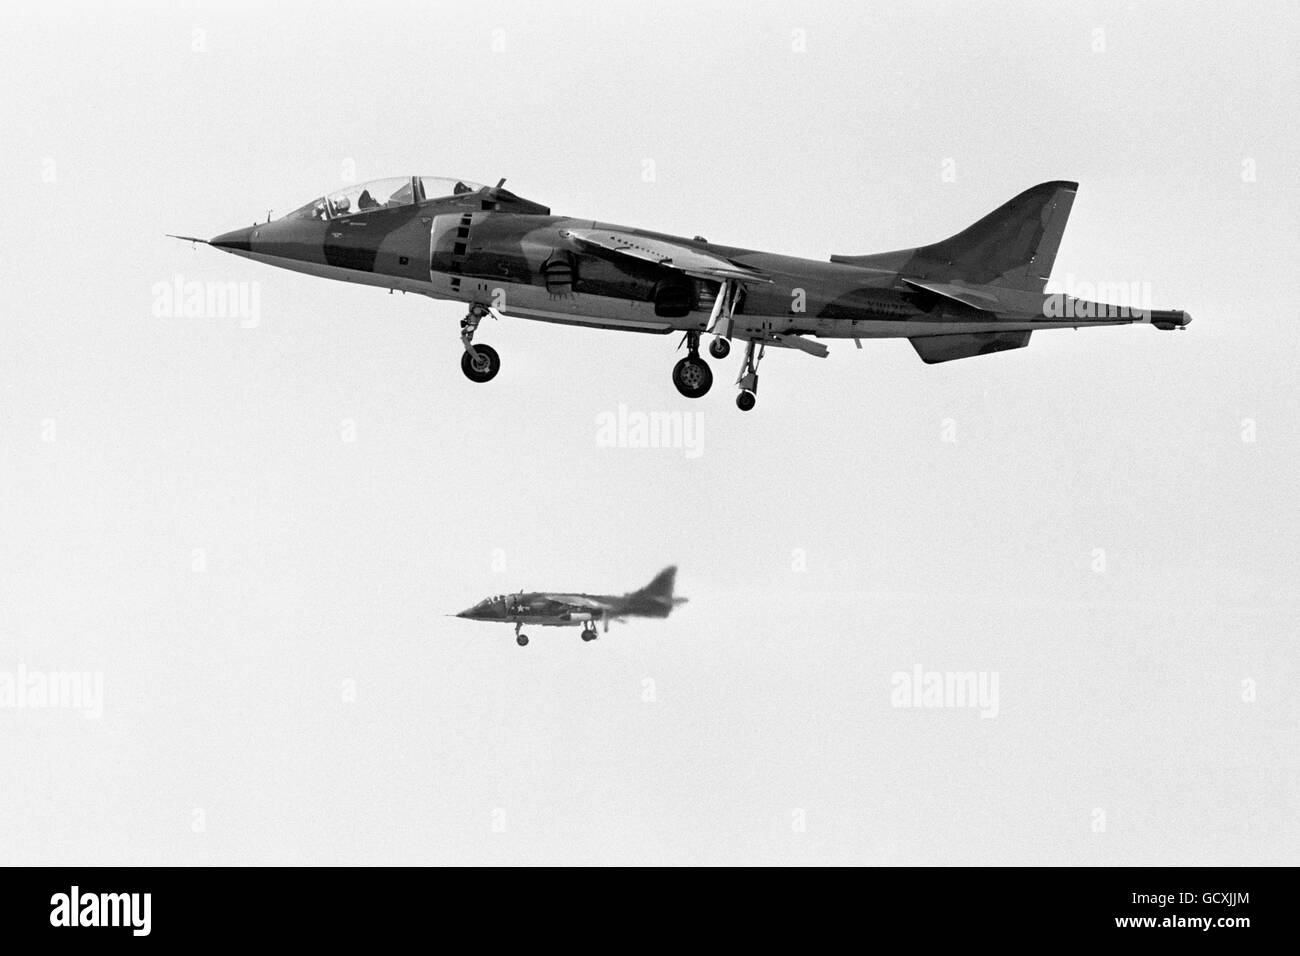 Luftfahrt - Hawker Siddeley Harrier. Ein Hawker Siddeley Harrier springen Jet im Flug. Stockfoto